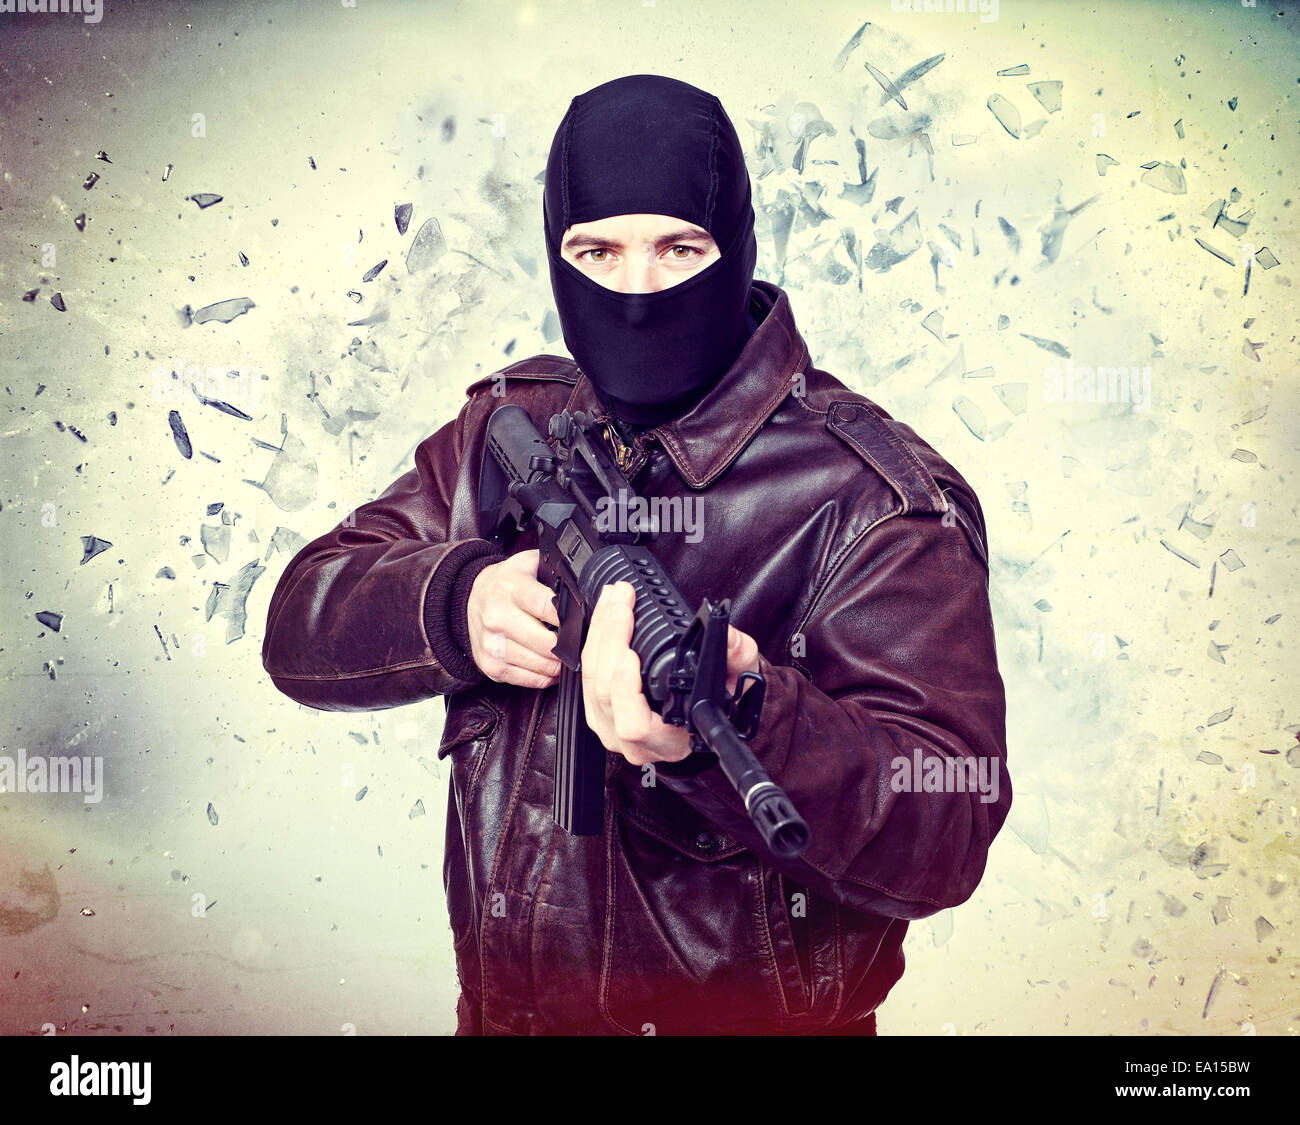 terroristischen Porträt und Hintergrund-explosion Stockfoto